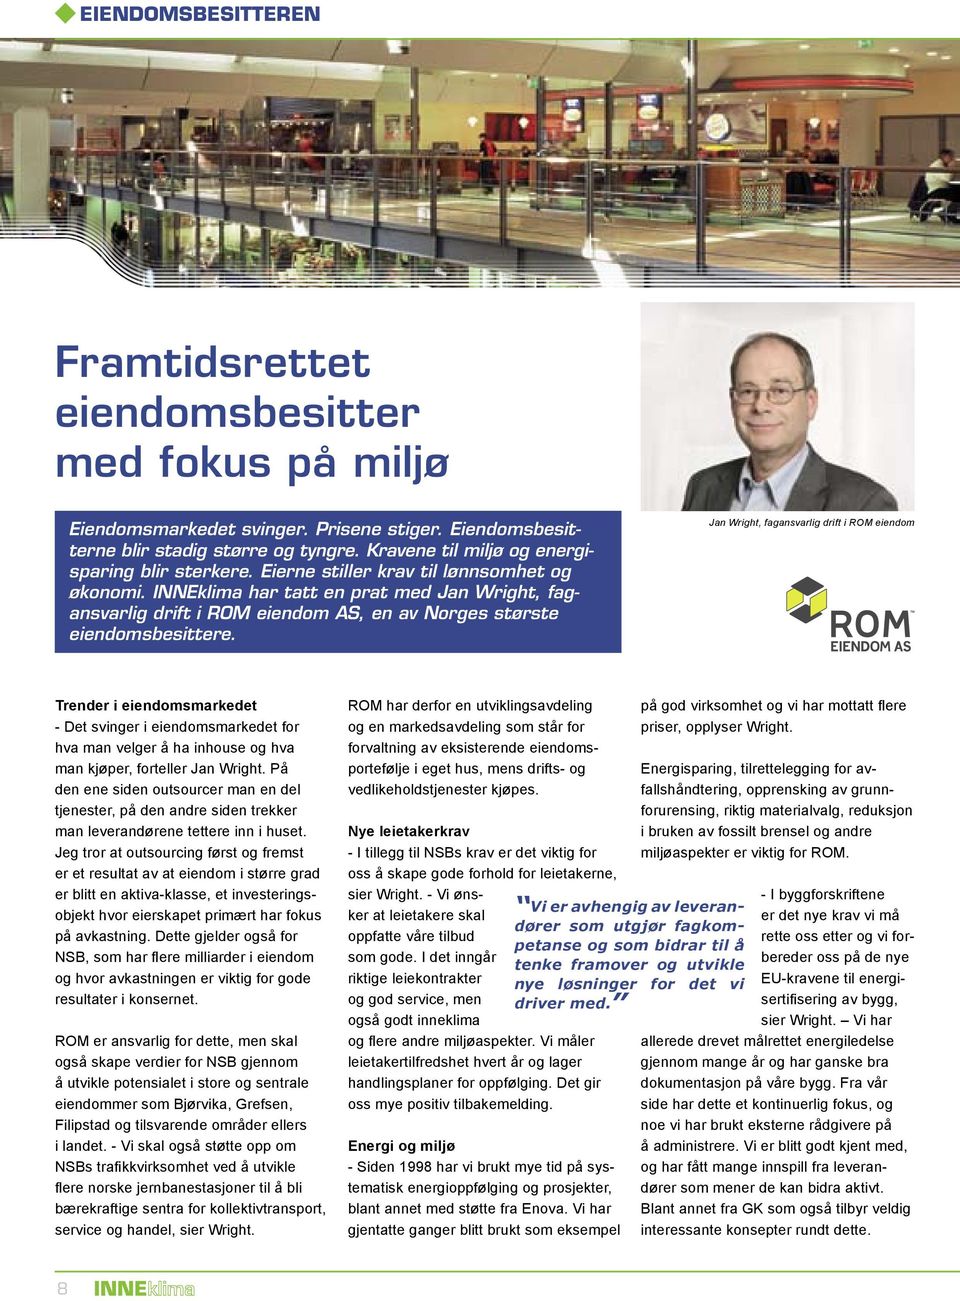 INNEklima har tatt en prat med Jan Wright, fagansvarlig drift i ROM eiendom AS, en av Norges største eiendomsbesittere.